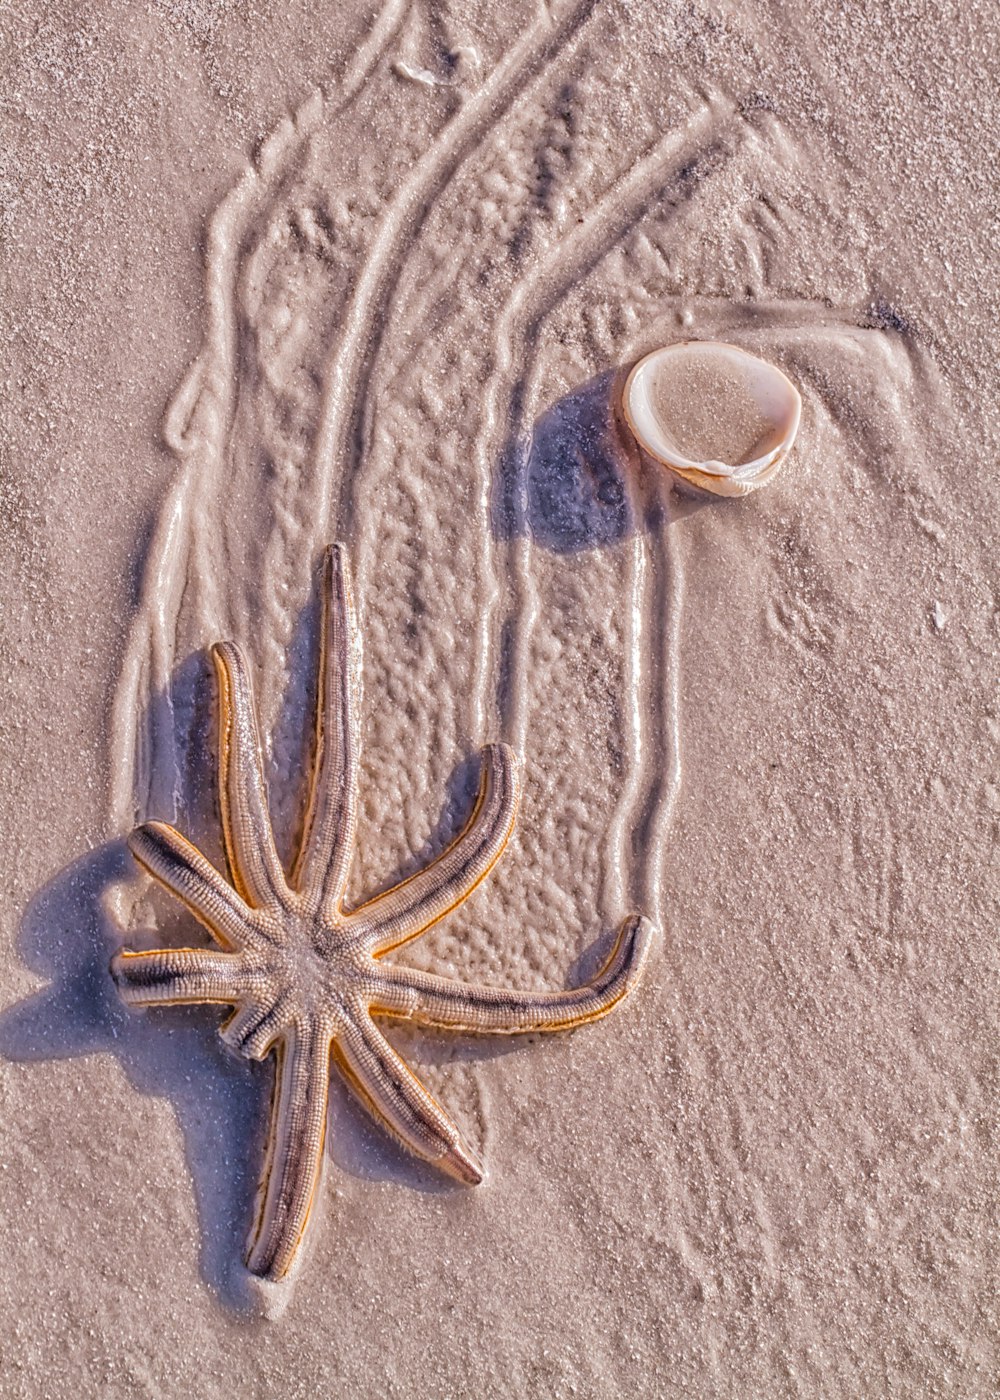 Ein Seestern an einem Sandstrand neben einer Muschel